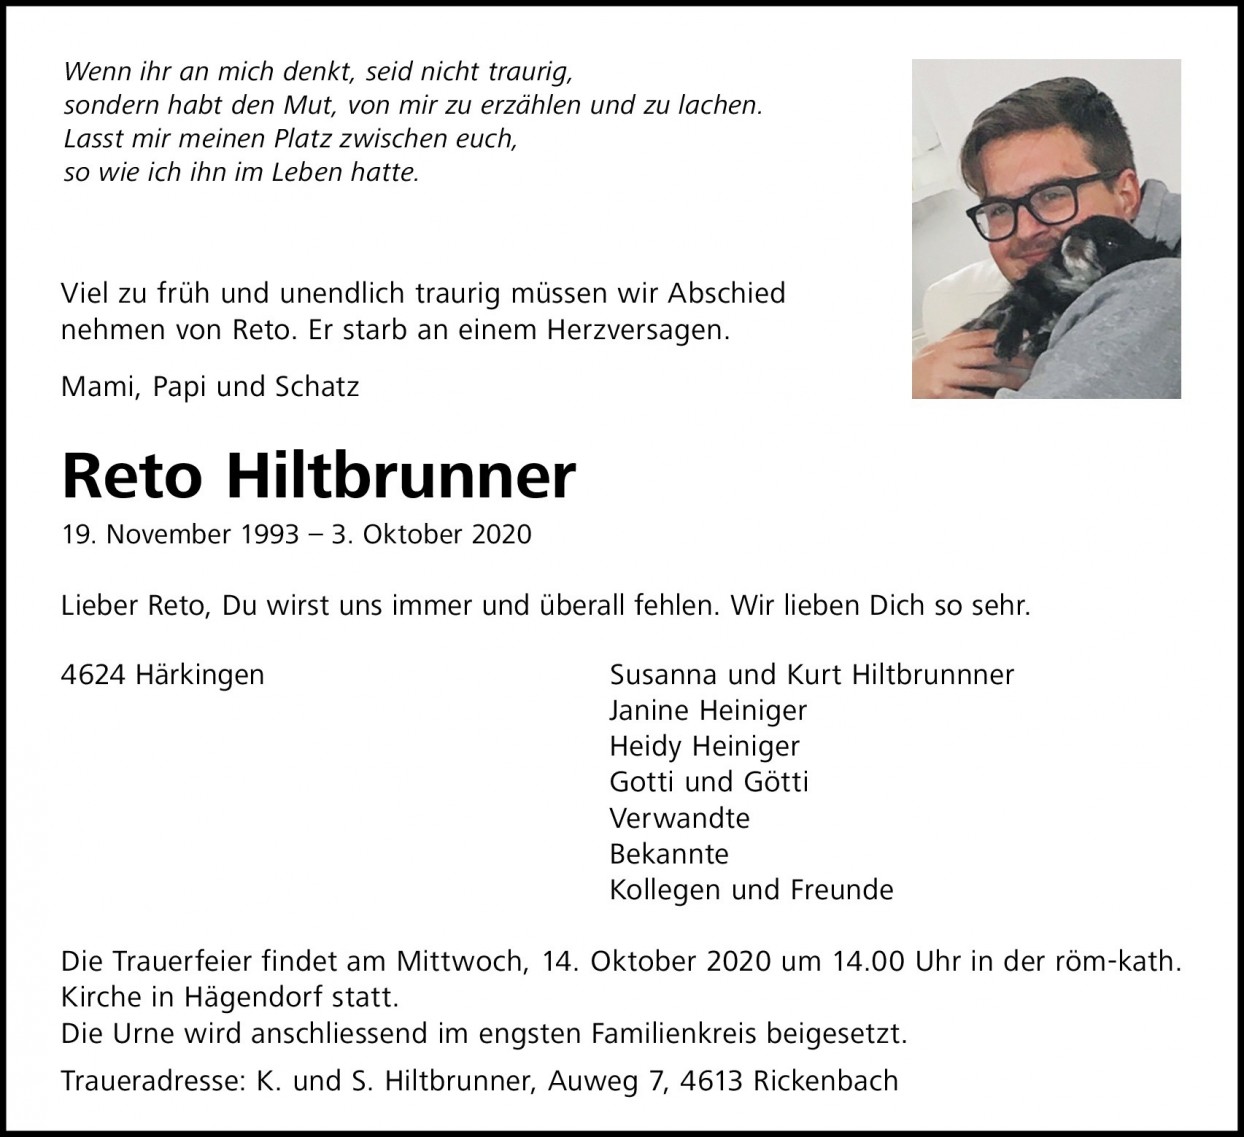 Reto Hiltbrunner